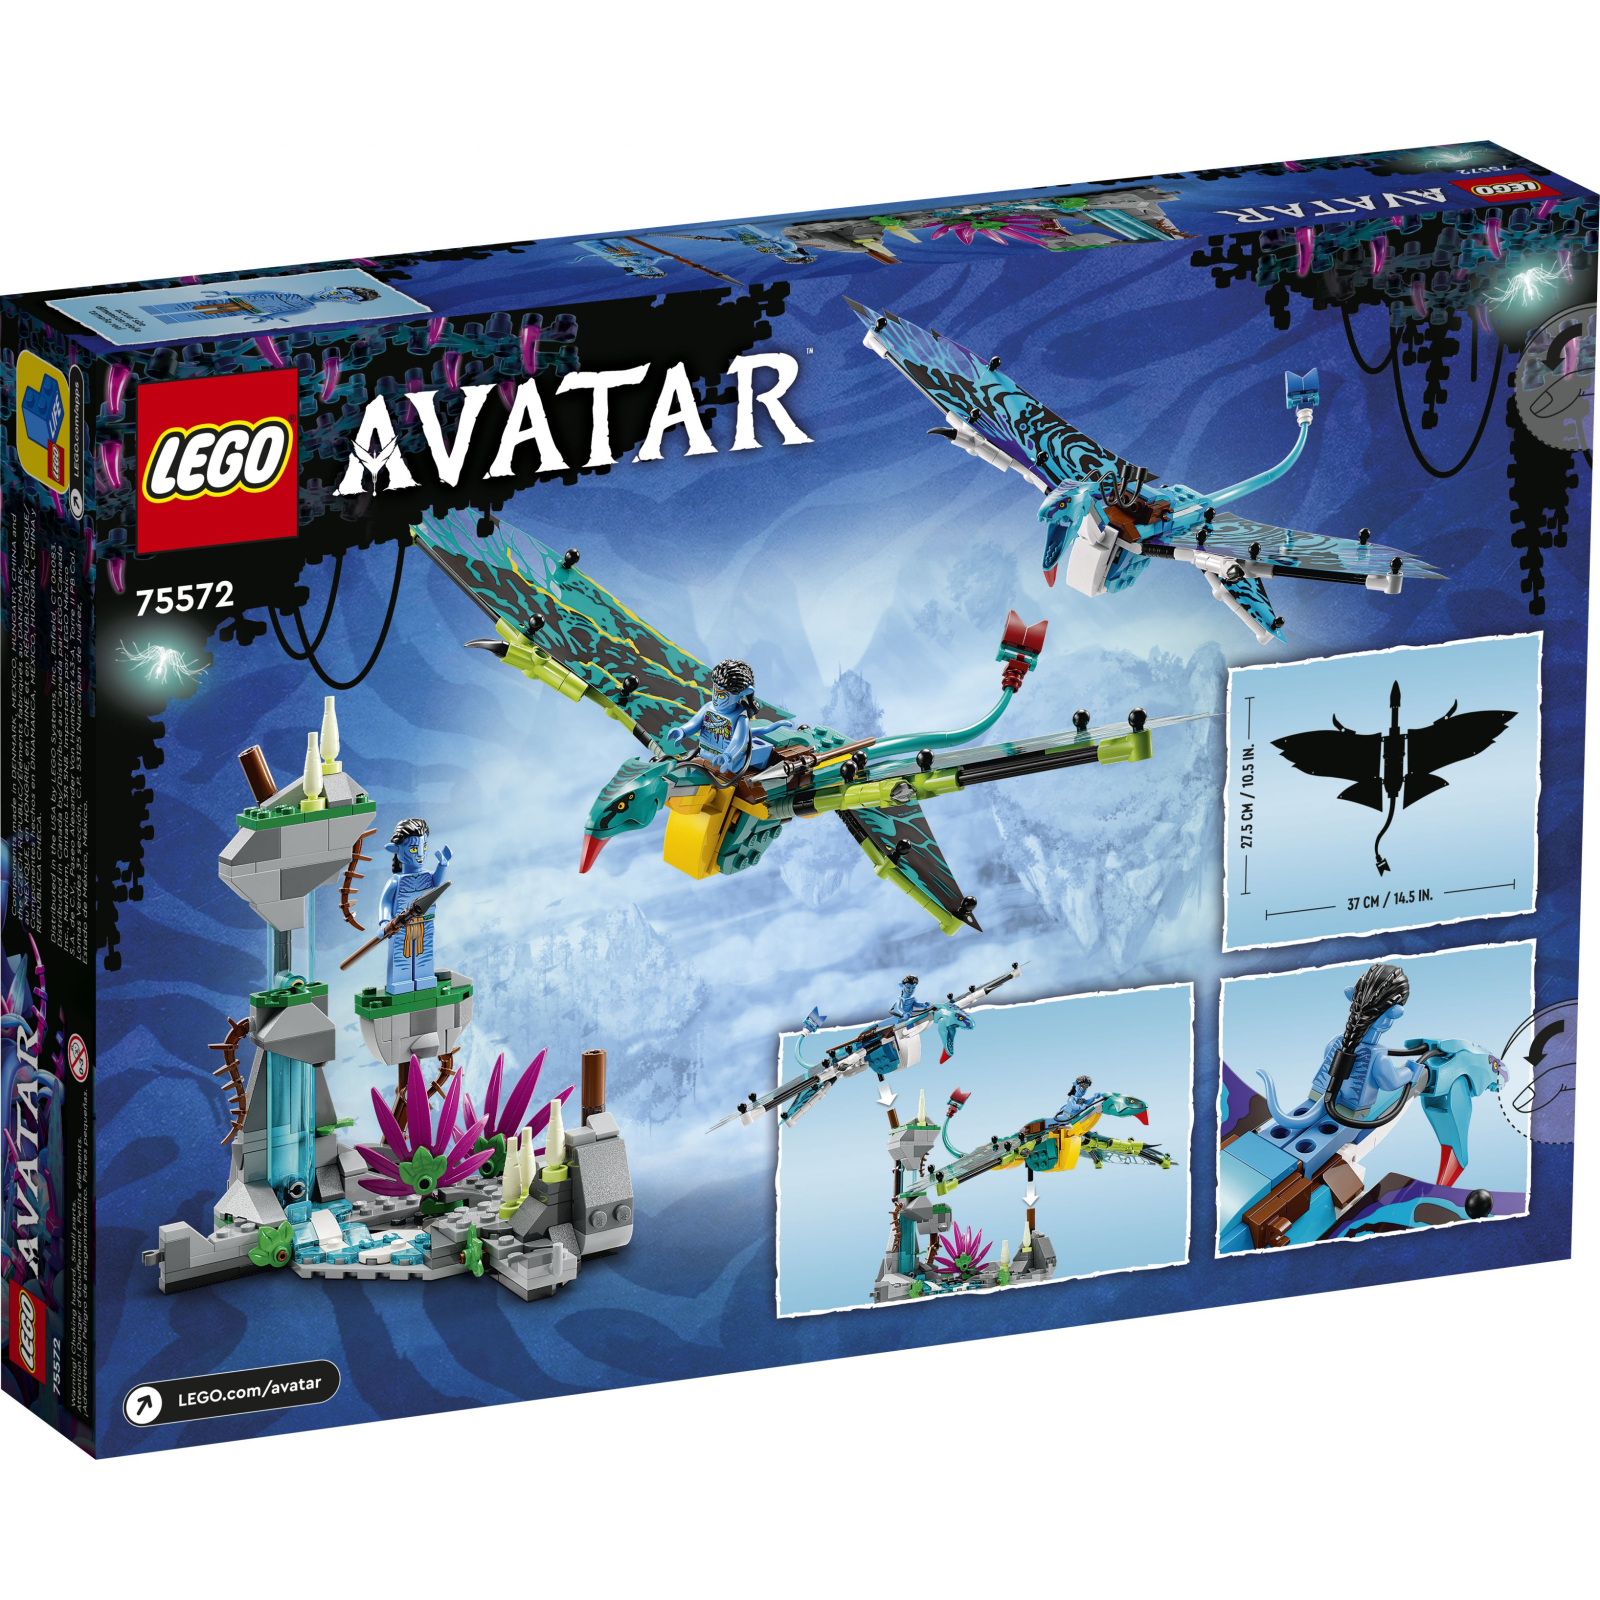 Конструктор LEGO Avatar Первый полет Джейка и Нейтири на Банши 572 деталей (75572) изображение 7